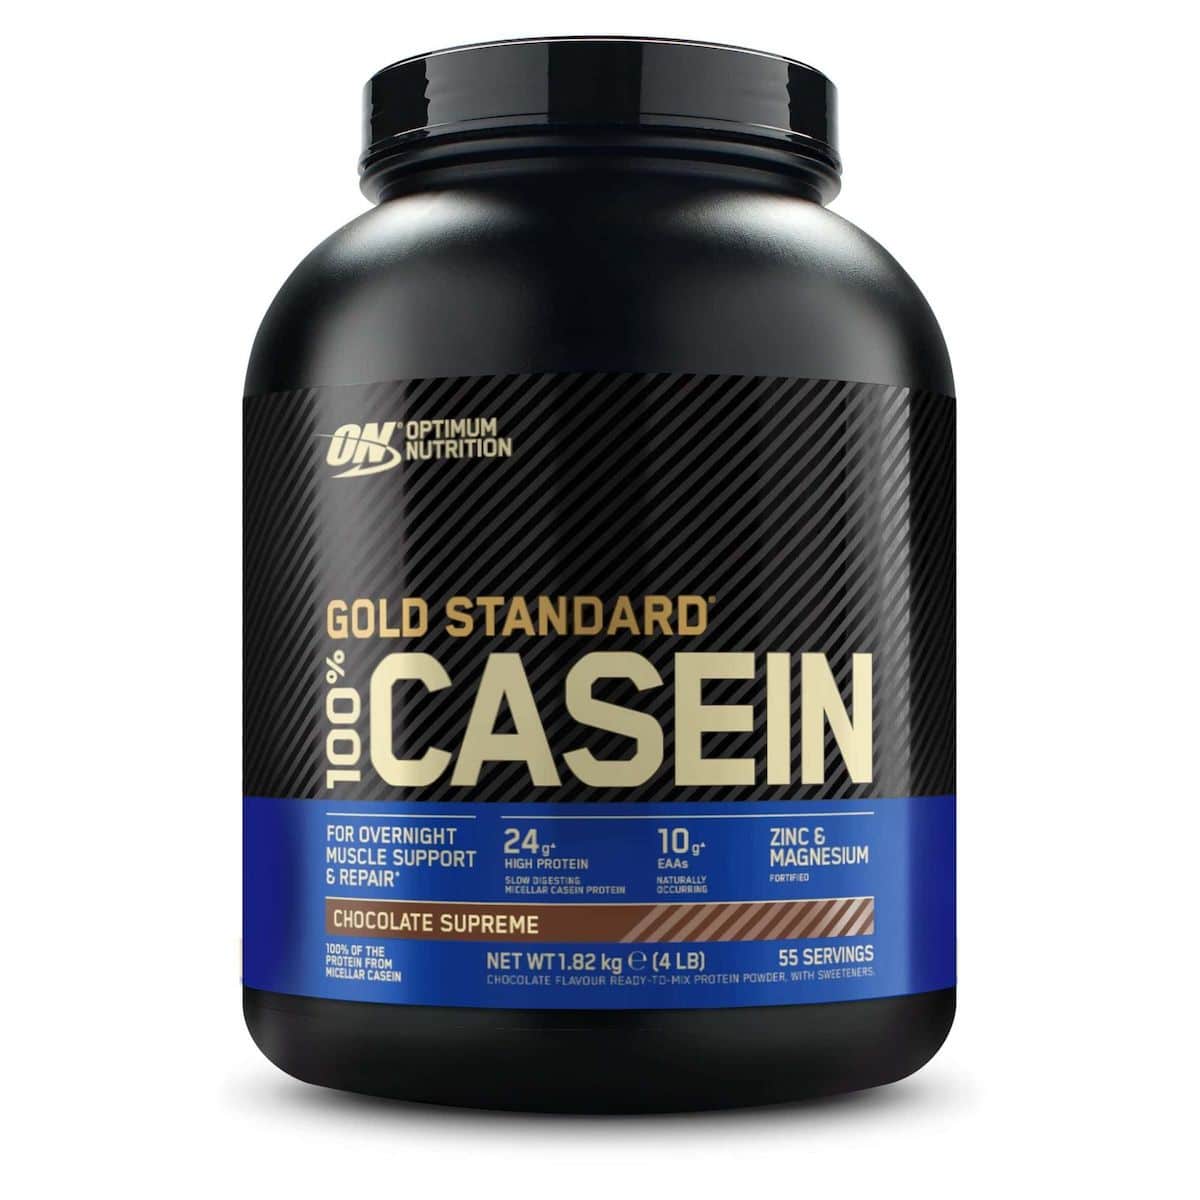 Gold Standard 100% Caseína 1.82kg Optimum Nutrition | Vainilla -  - 